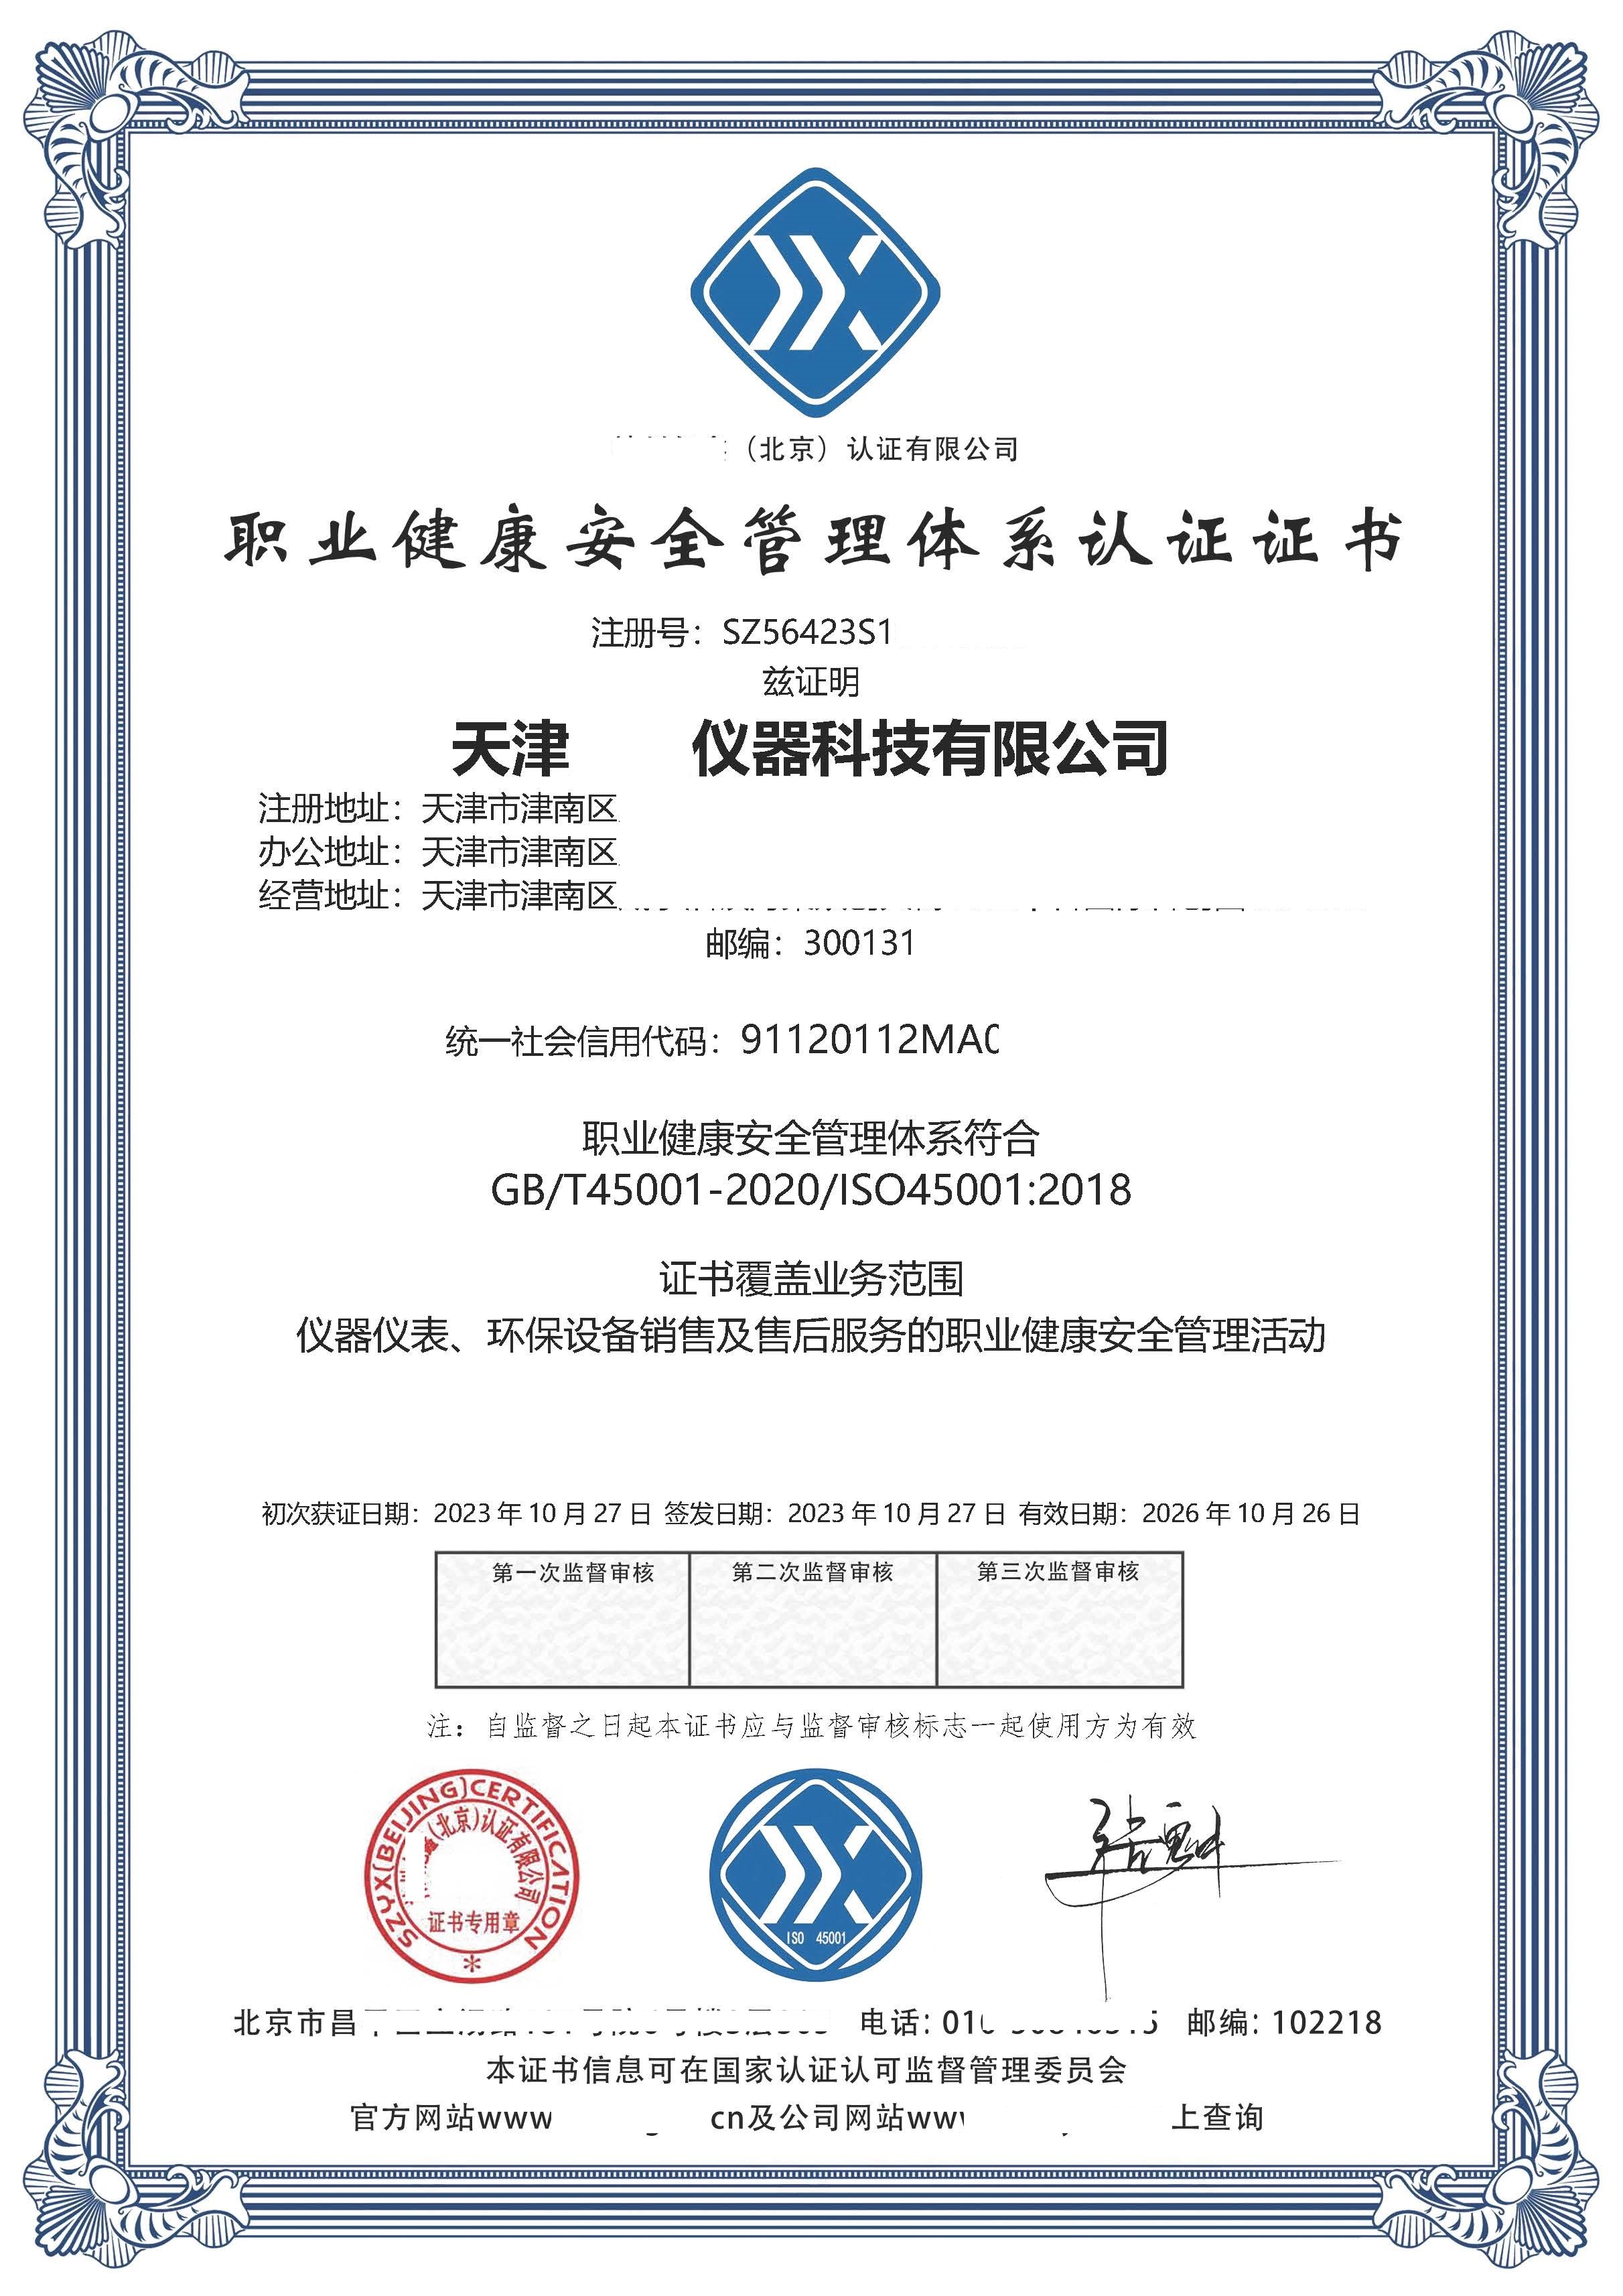 恭喜  天津**仪器科技有限公司  获得ISO9001质量、ISO14001环境、ISO45001职业健康安全管理体系咨询证书